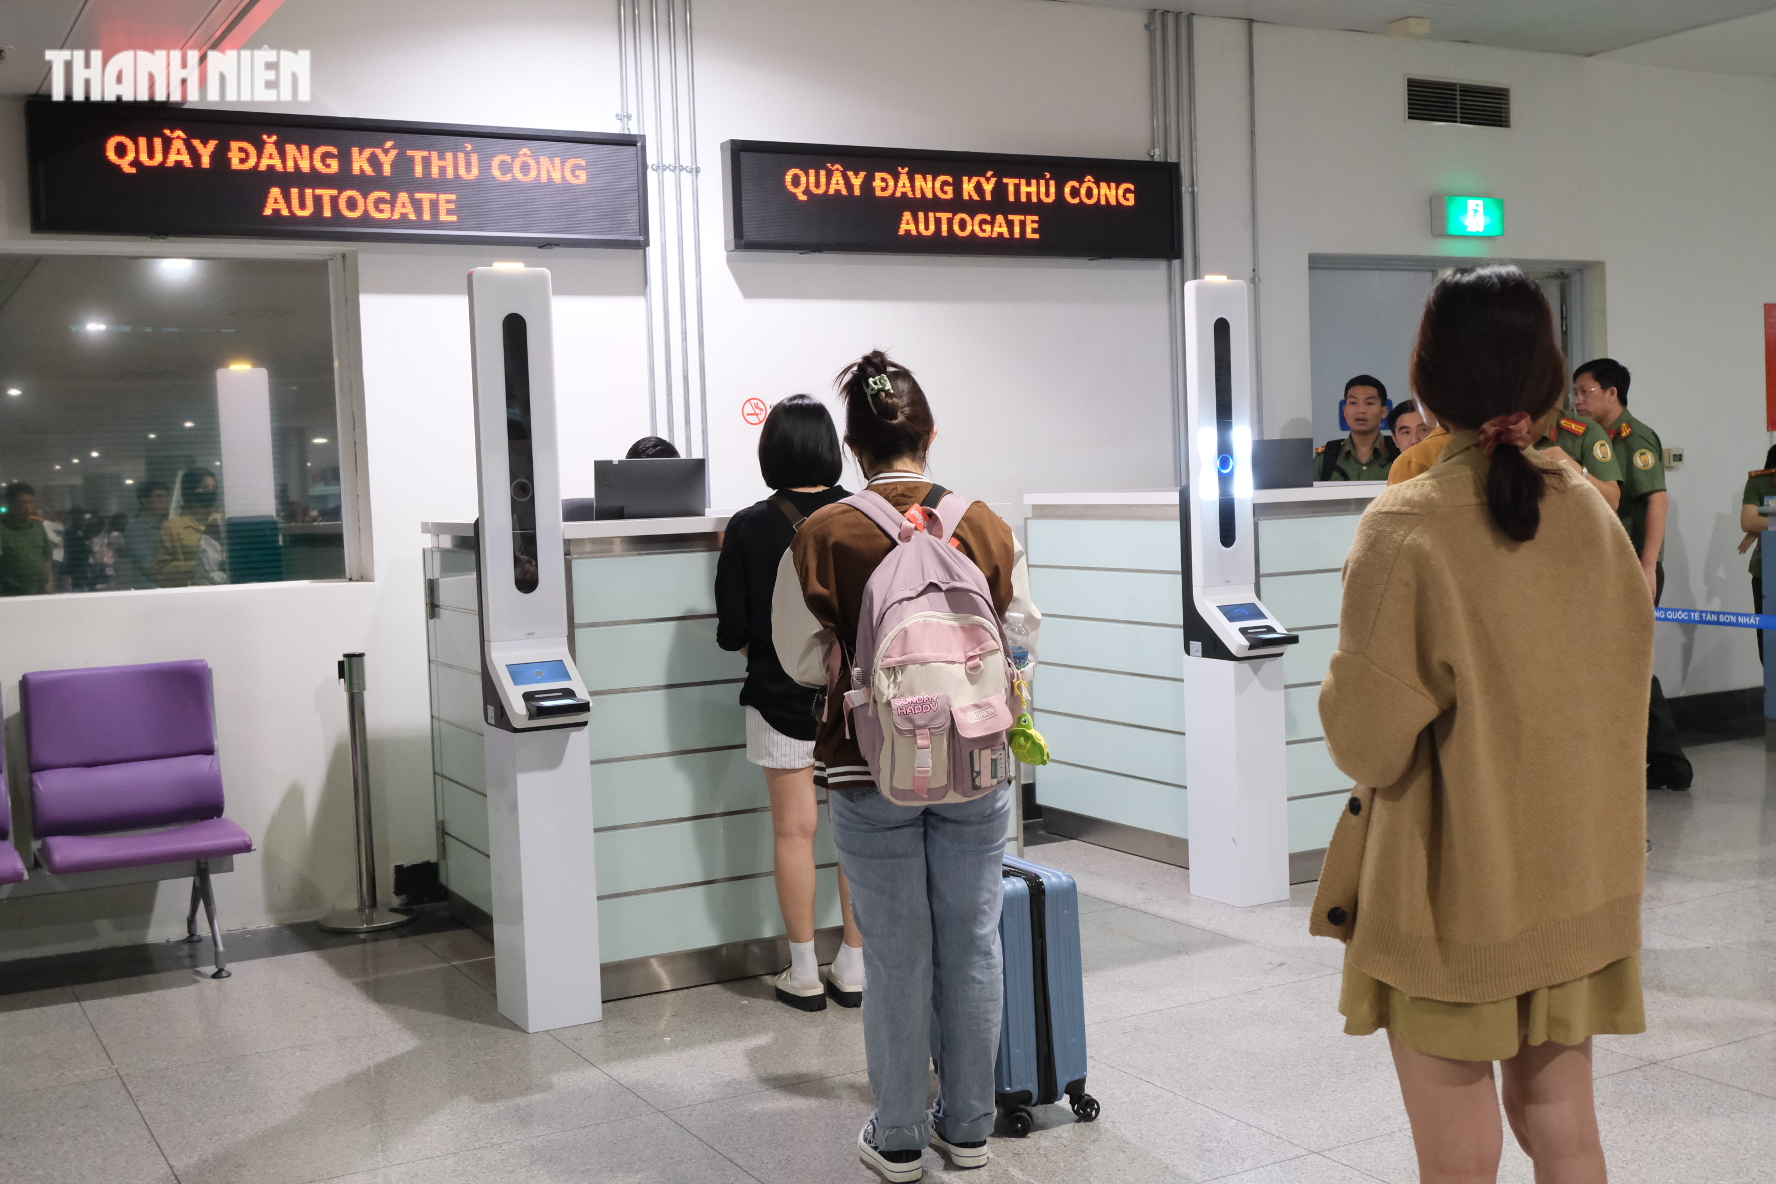 Tân Sơn Nhất chính thức thử nghiệm scan passport cho người Việt, nhập cảnh chỉ 30 giây - Ảnh 1.